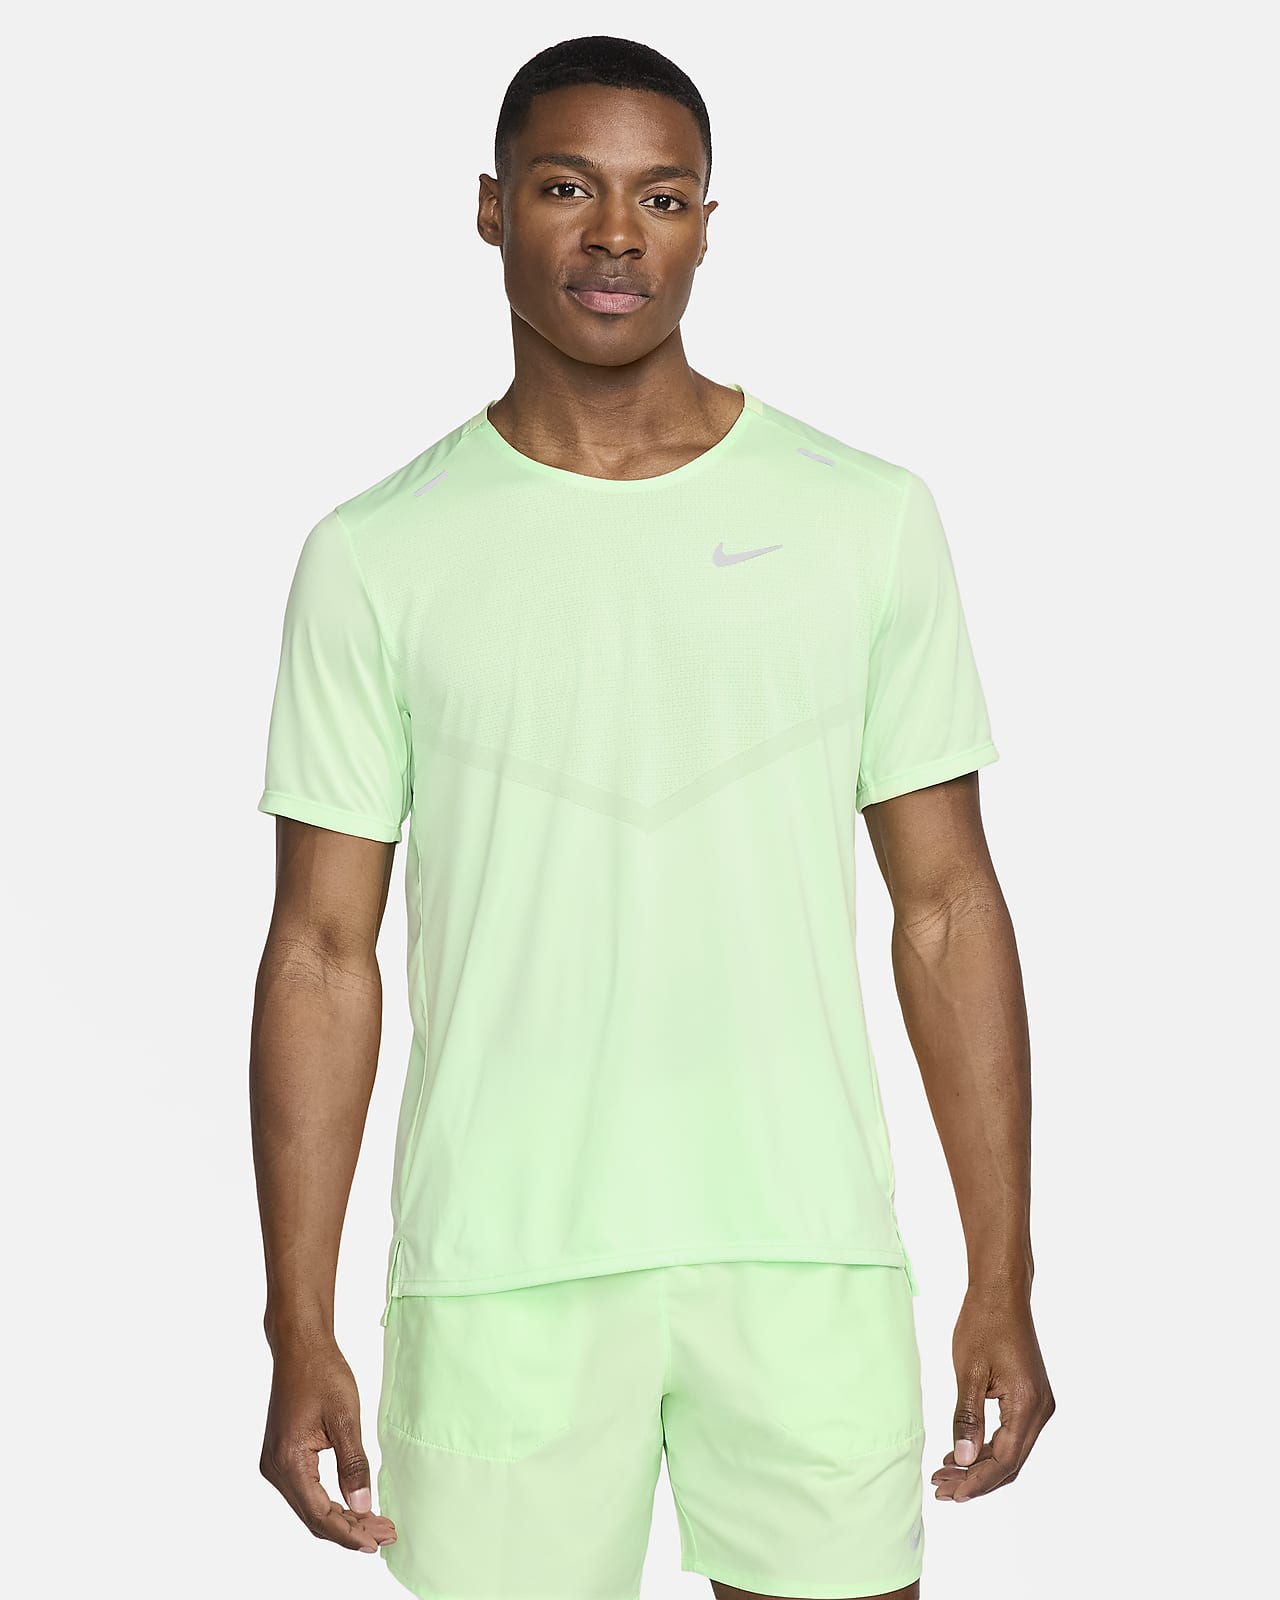 Ανδρική κοντομάνικη μπλούζα για τρέξιμο Dri-FIT Nike Rise 365